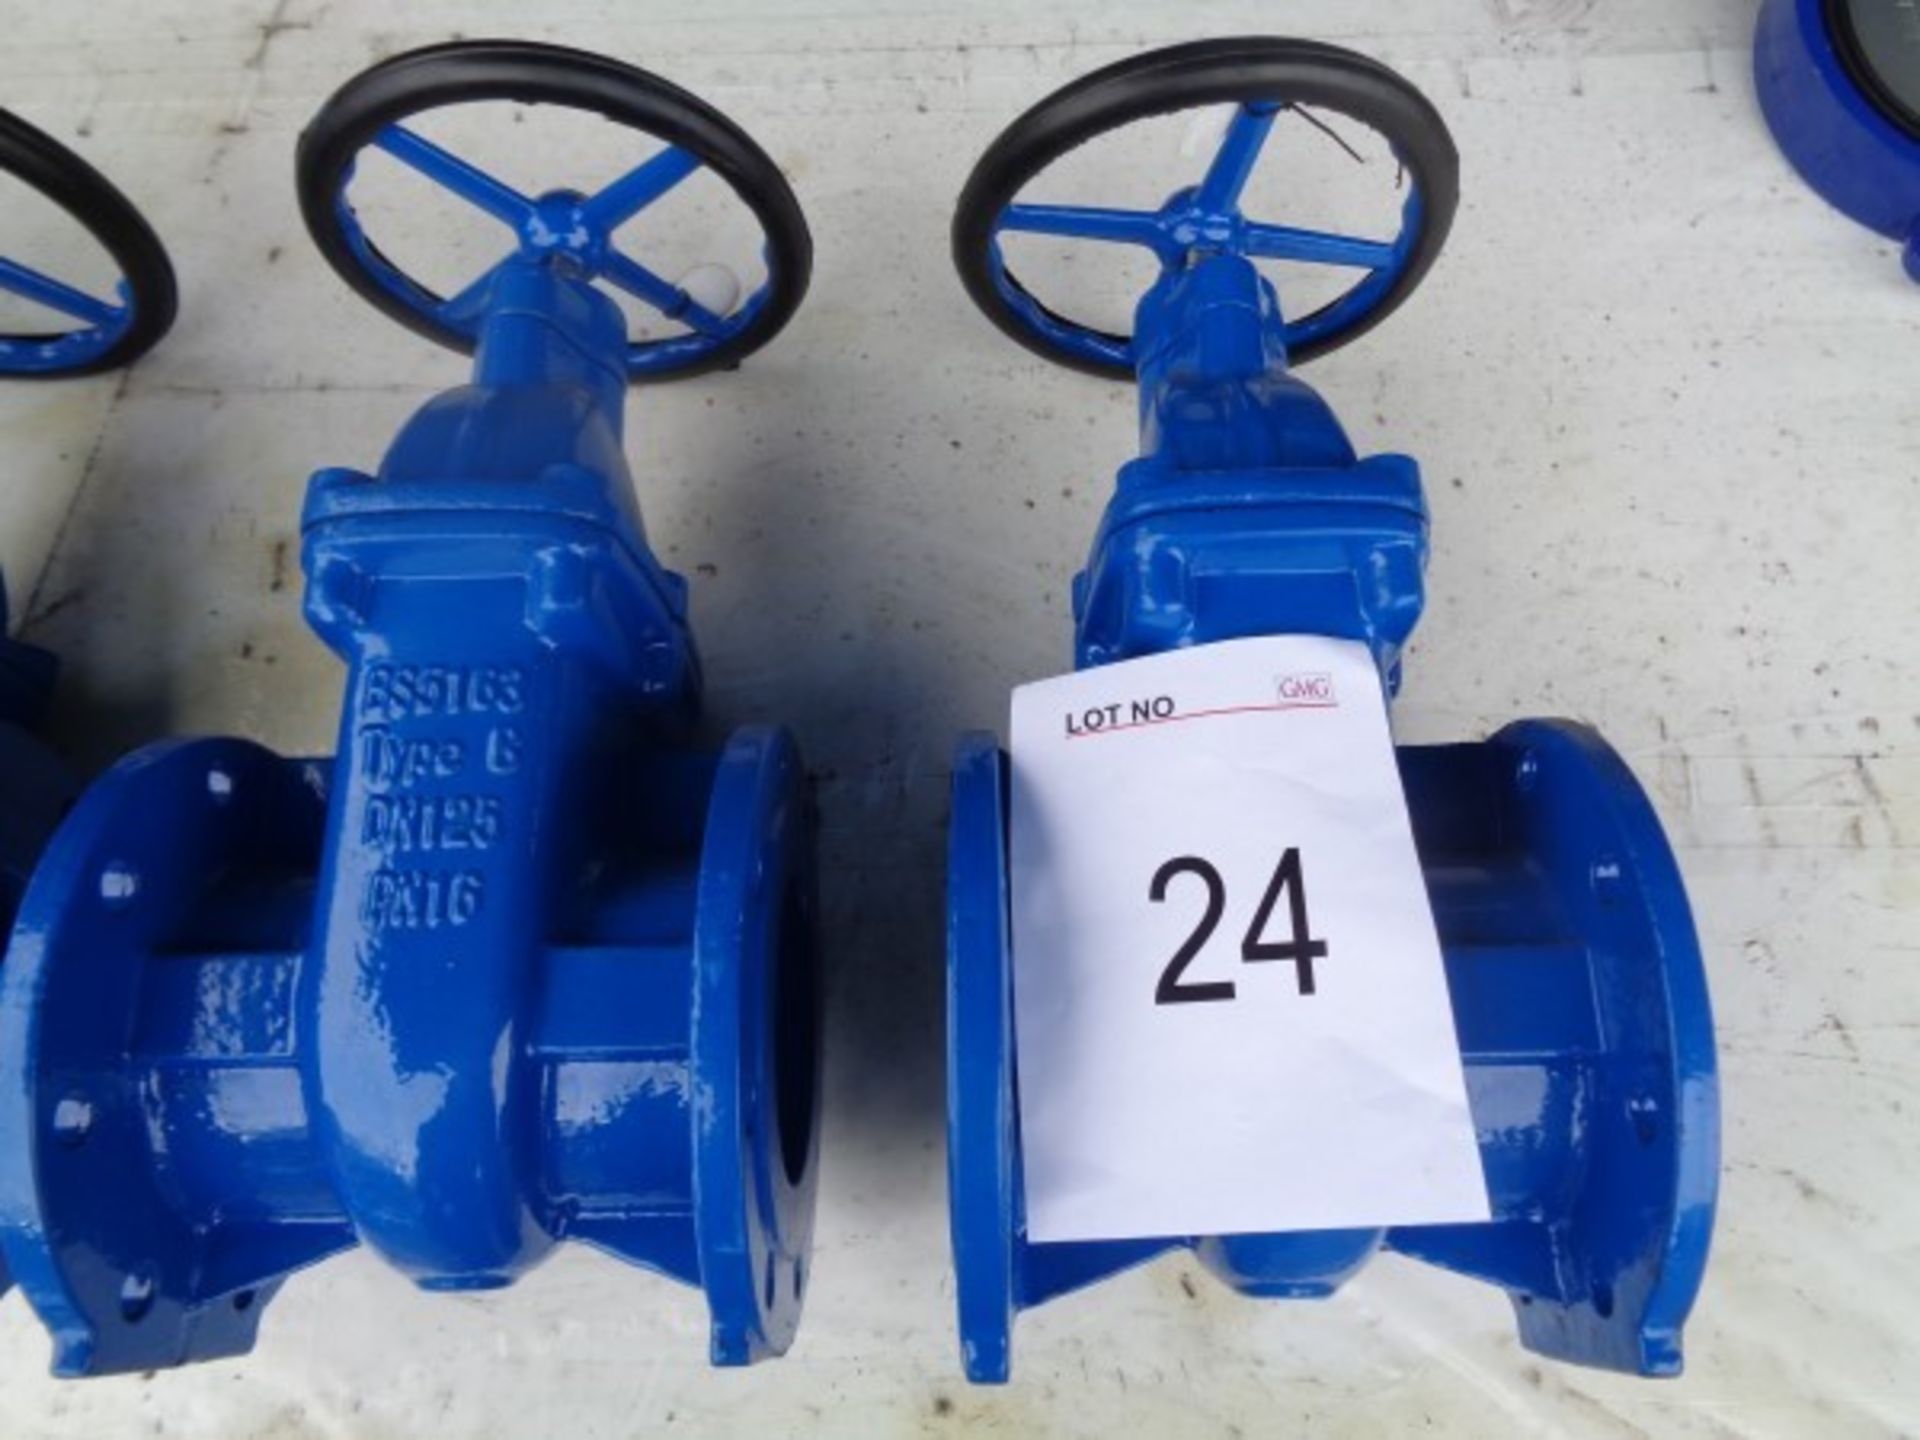 2 x BS5163 type B DN125 PN16 gate valves